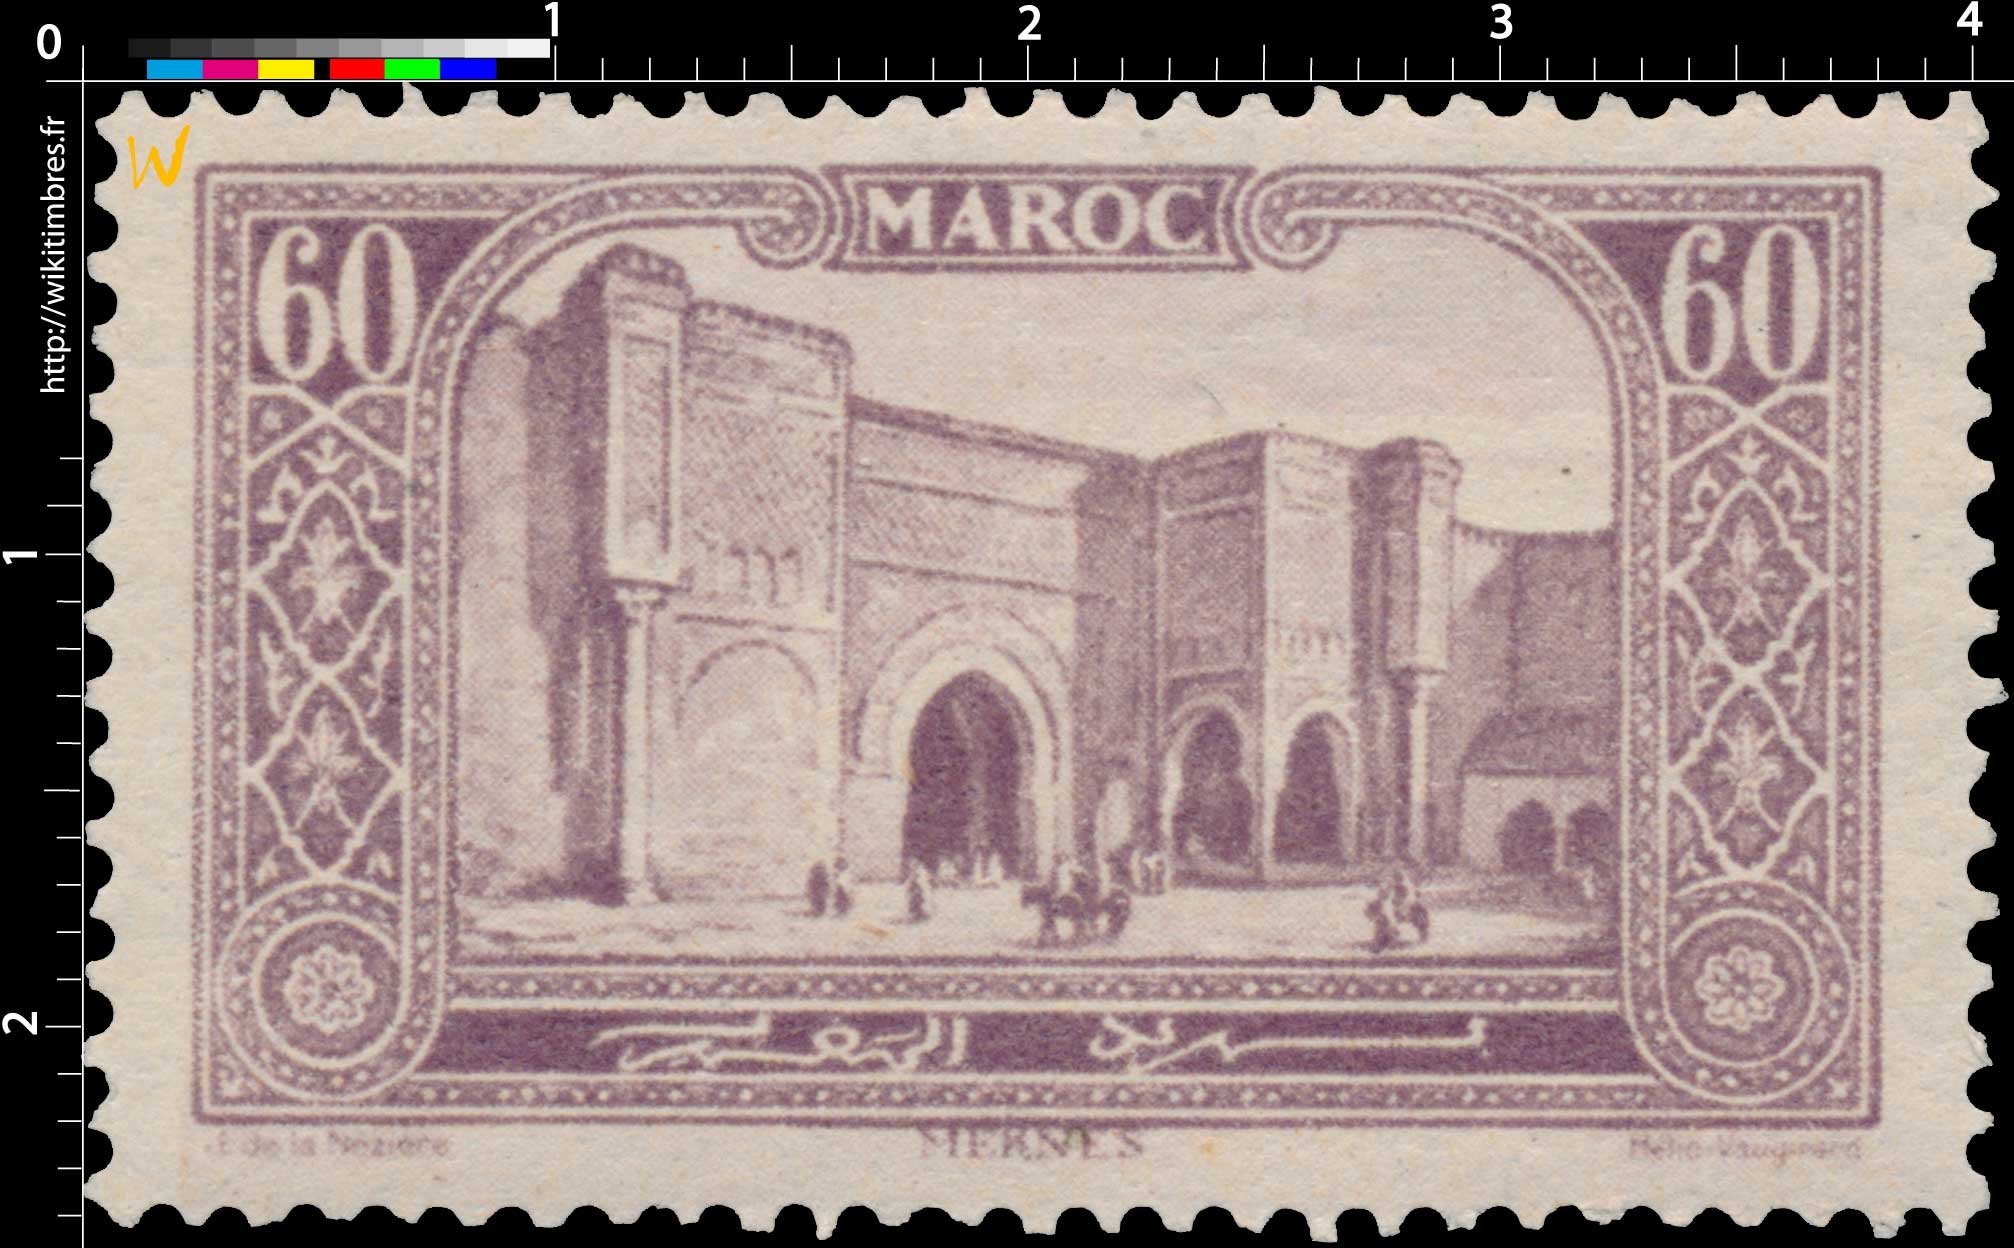 1923 Maroc - Porte Bab-el-Mansour - Mecknès